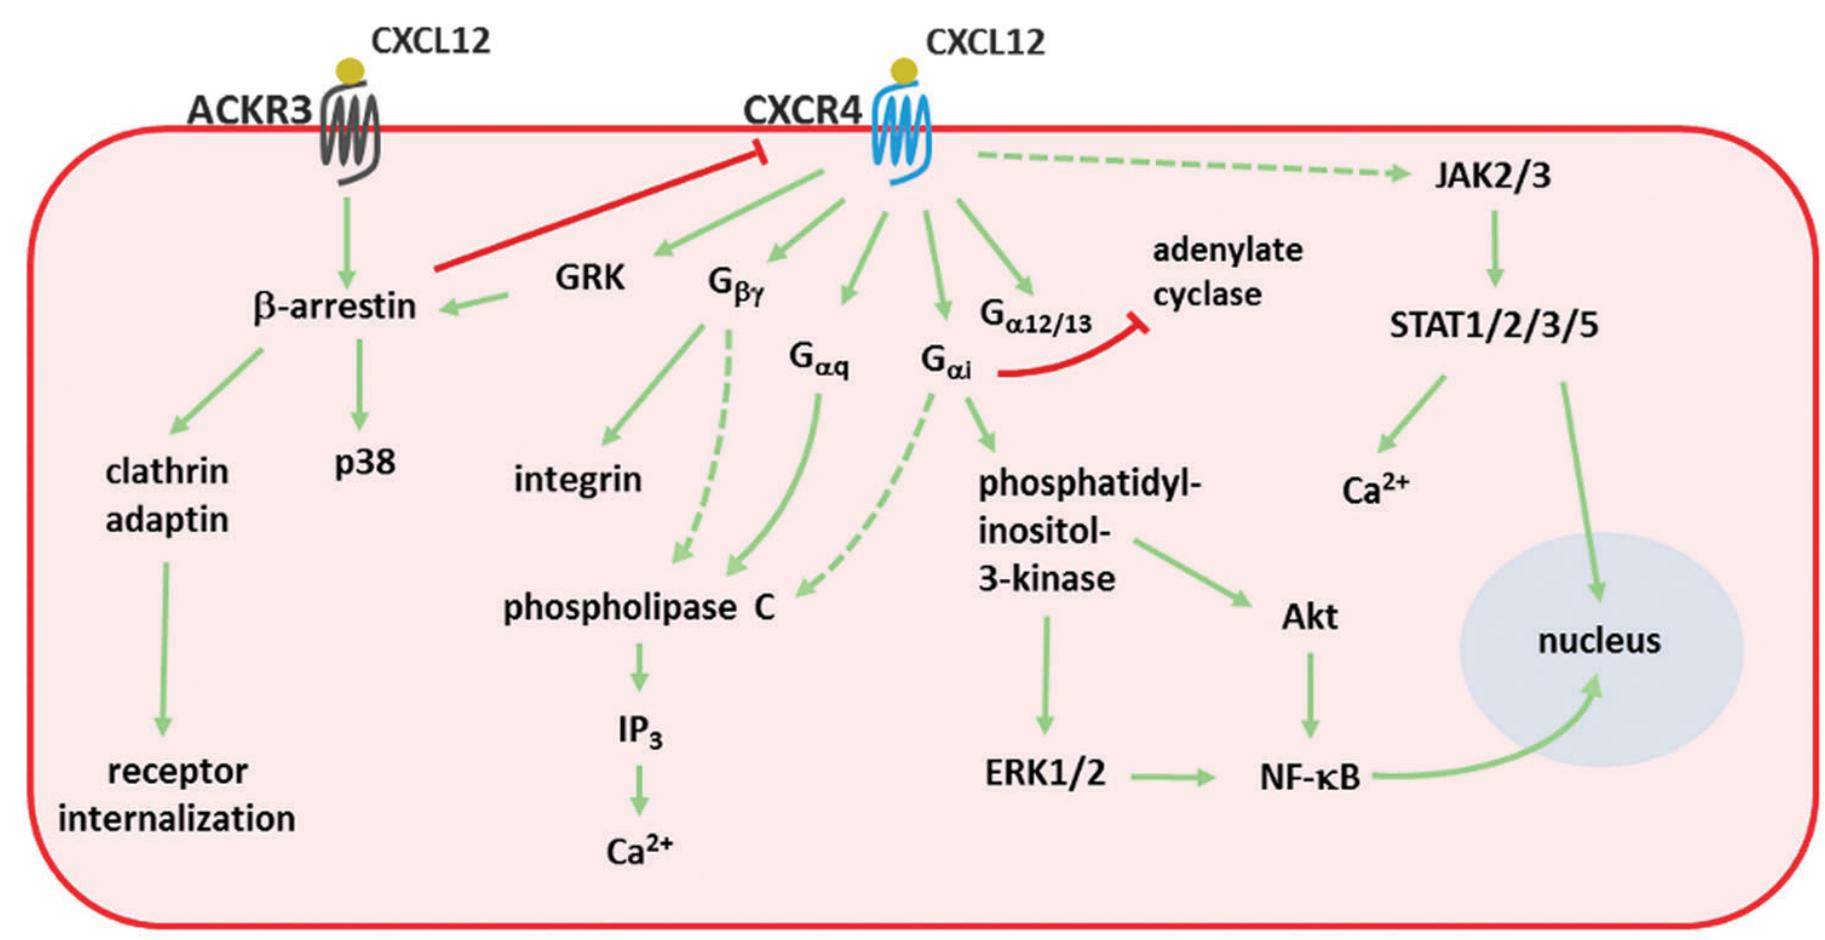 Figure 1. Signal transduction pathways activated by CXCL12. (Janssens R, et al., 2018)